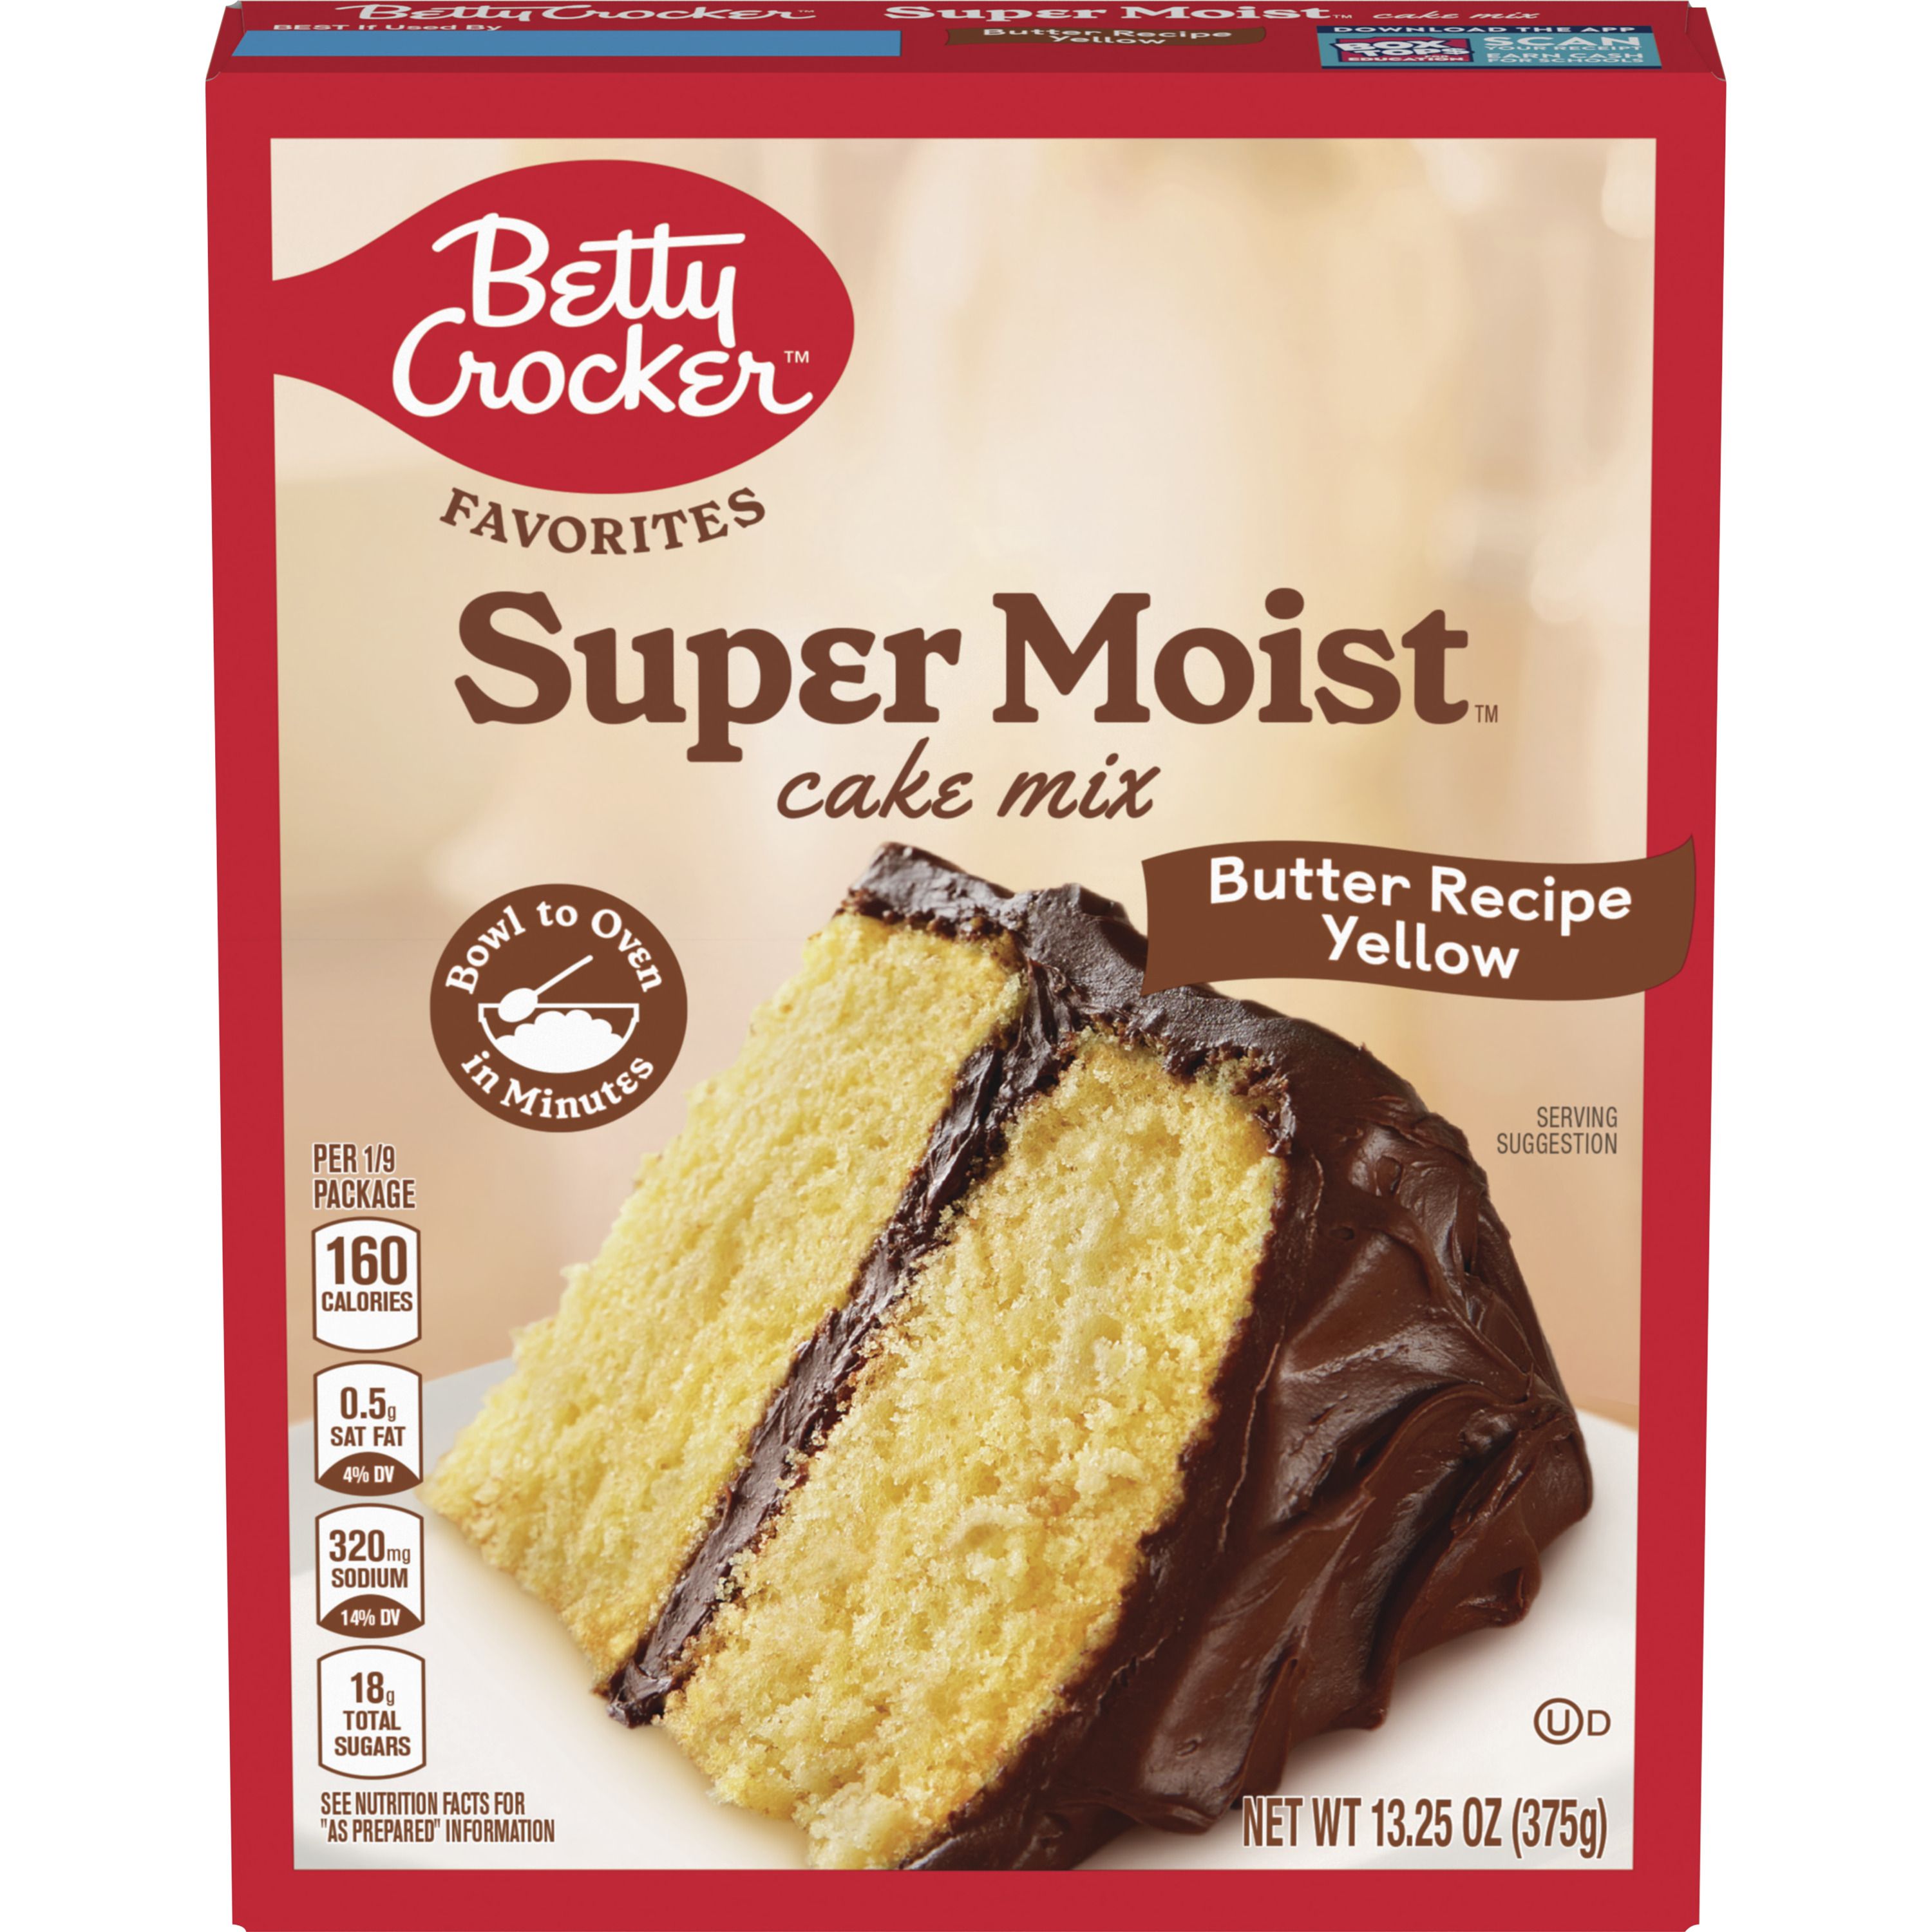 Betty Crocker Favorites Super Moist Butter Recipe Yellow Cake Mix, 13.25 oz - Front